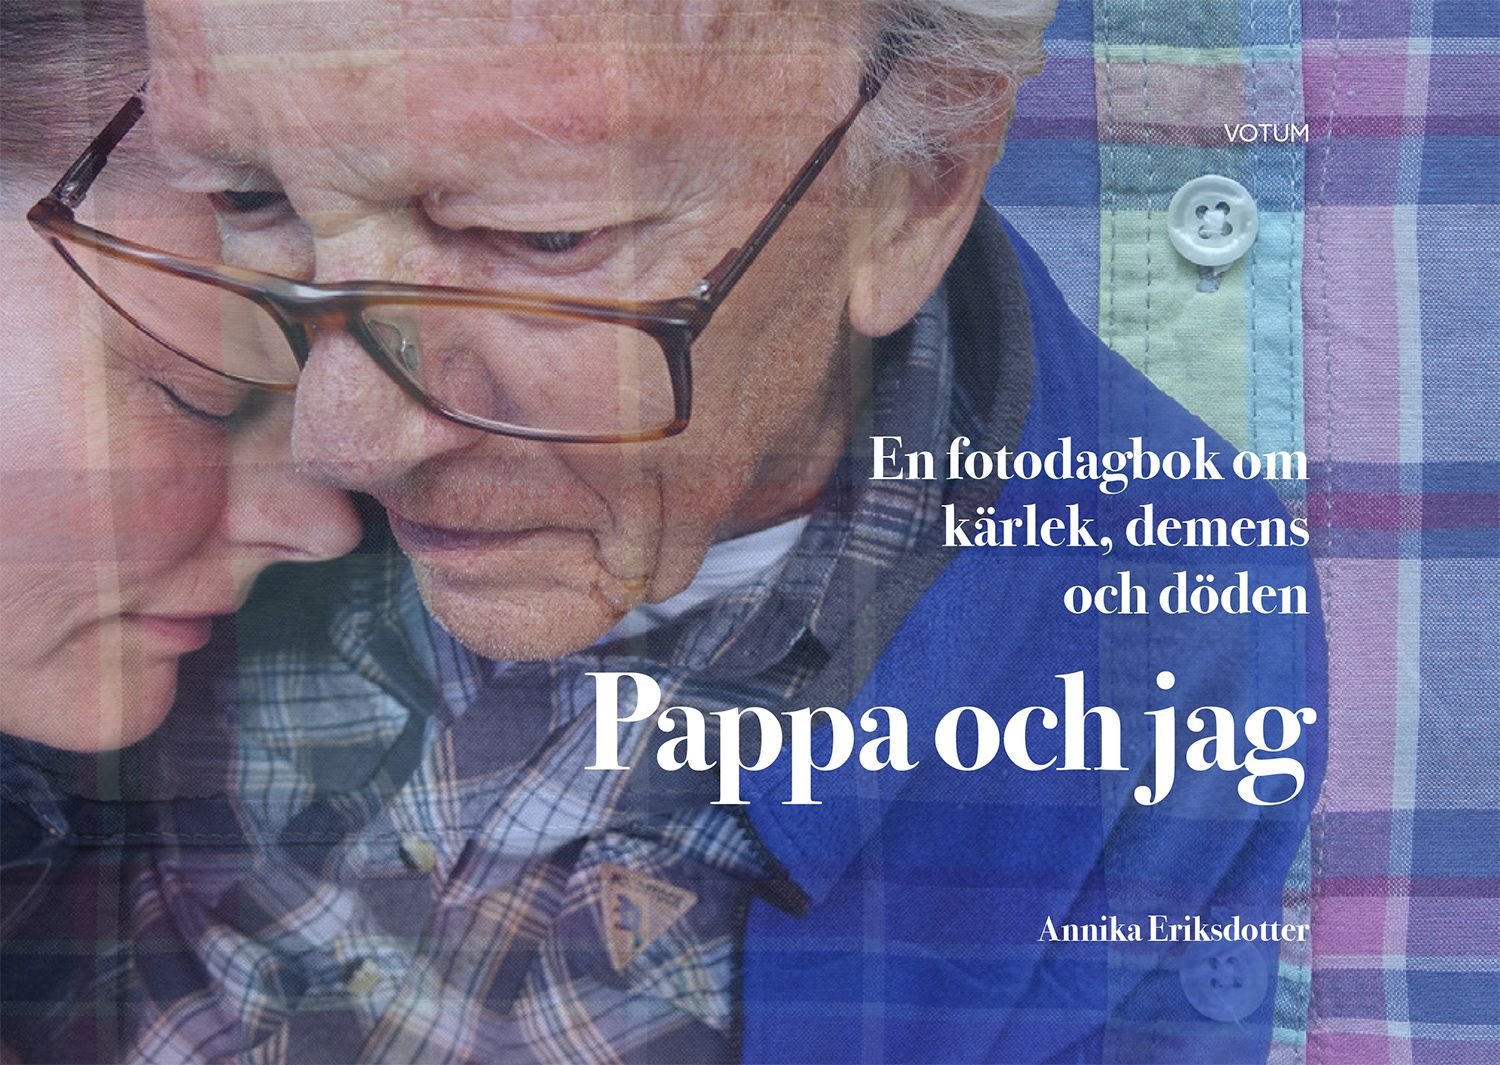 Pappa och jag: en fotodagbok om kärlek, demens och döden, e-bok av Annika Eriksdotter